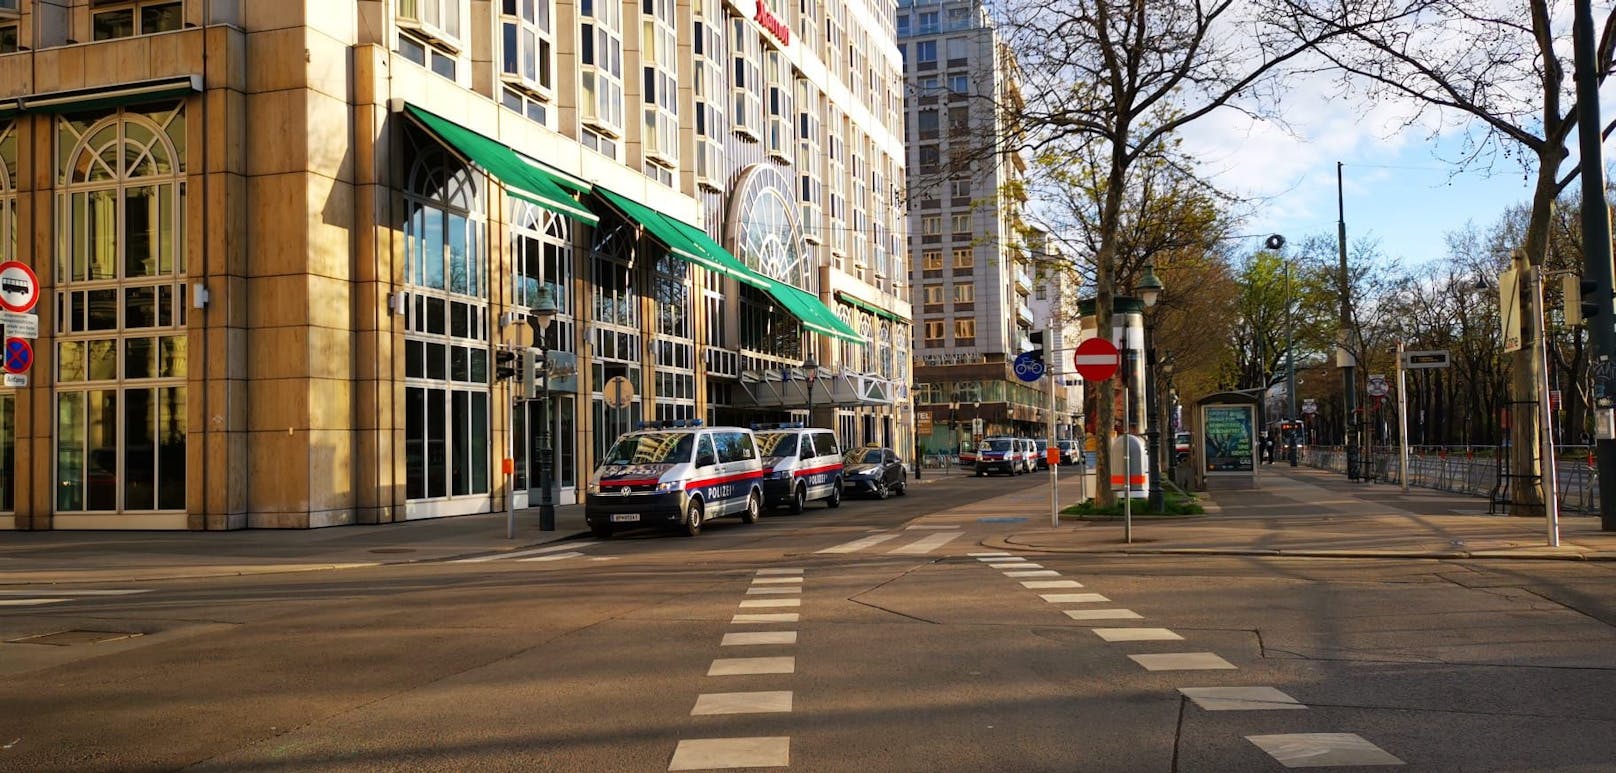 Trotz Platzverbot –Aktivisten kapern Gas-Hotel in Wien